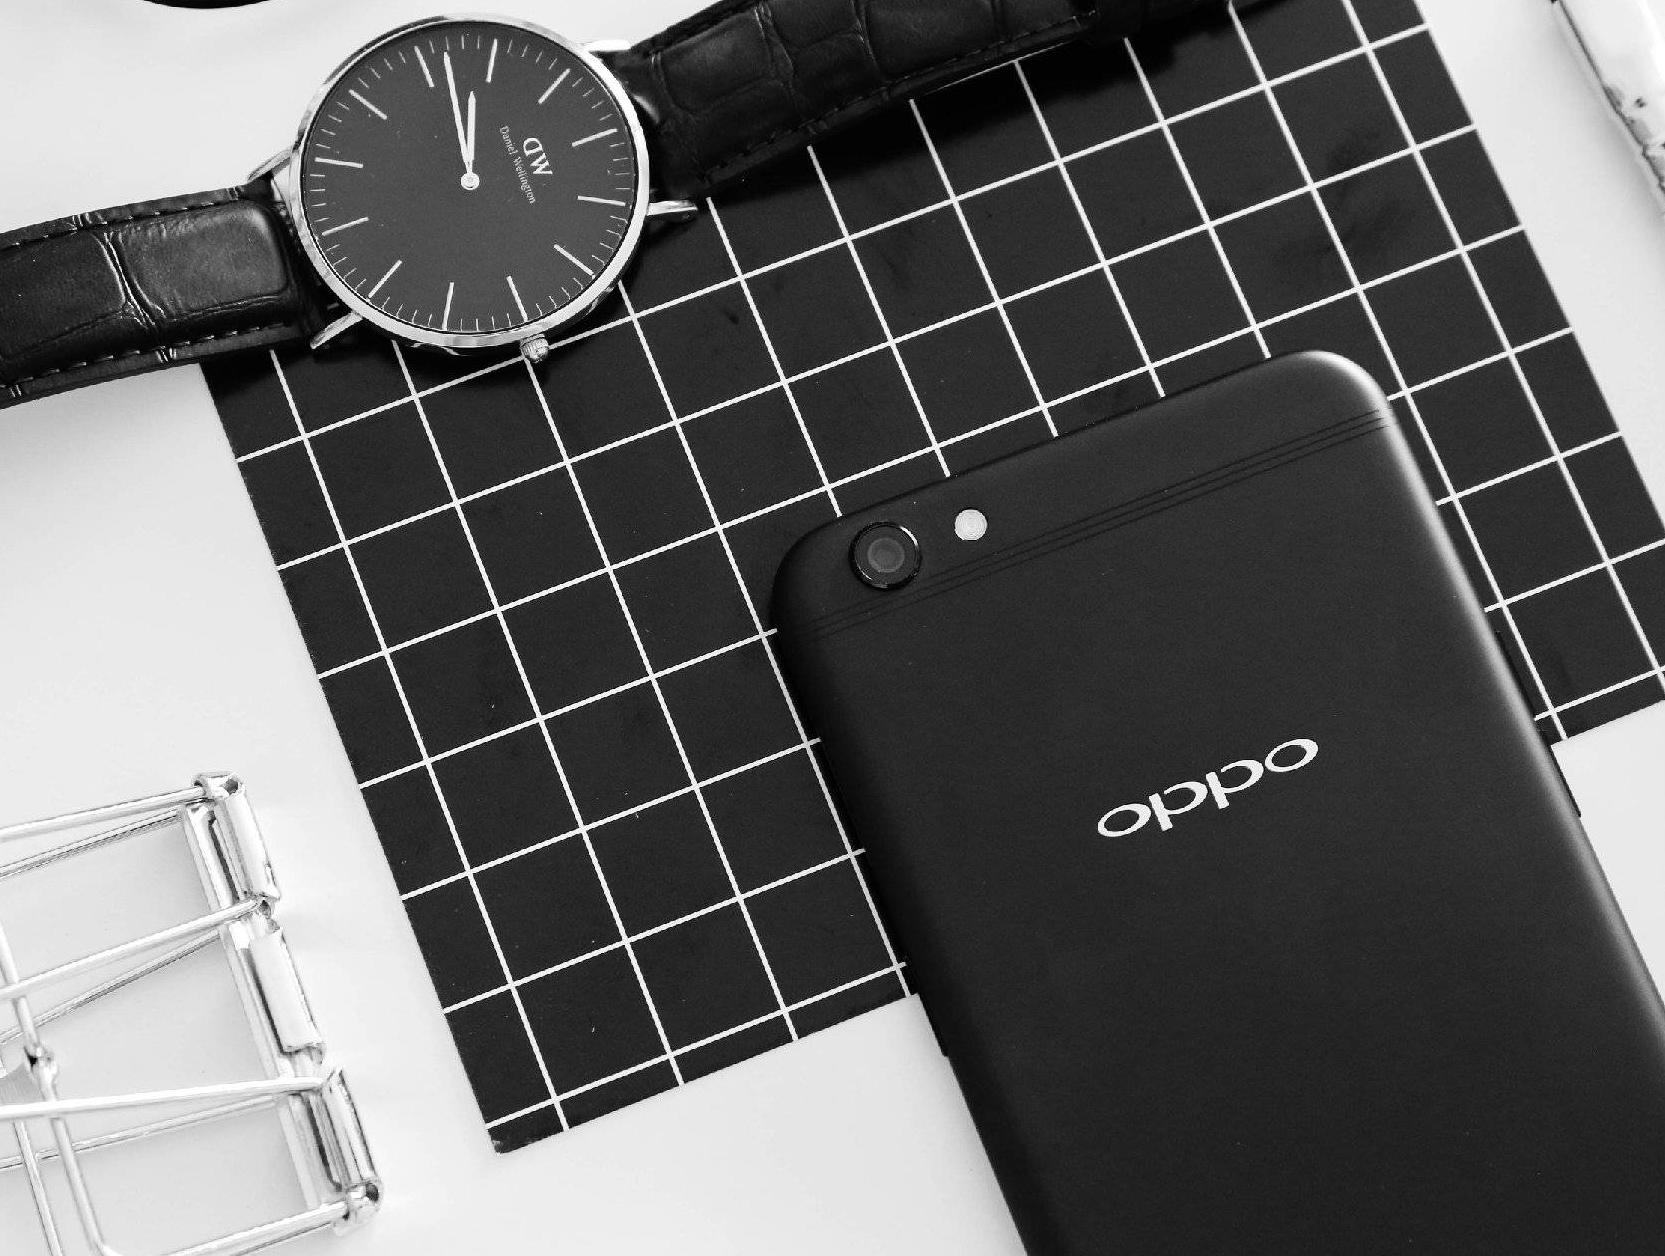 Oppo R9s เตรียมเปิดตัวปลายปีนี้มาพร้อมบอดี้โลหะสุดบางและ Super VOOC ...